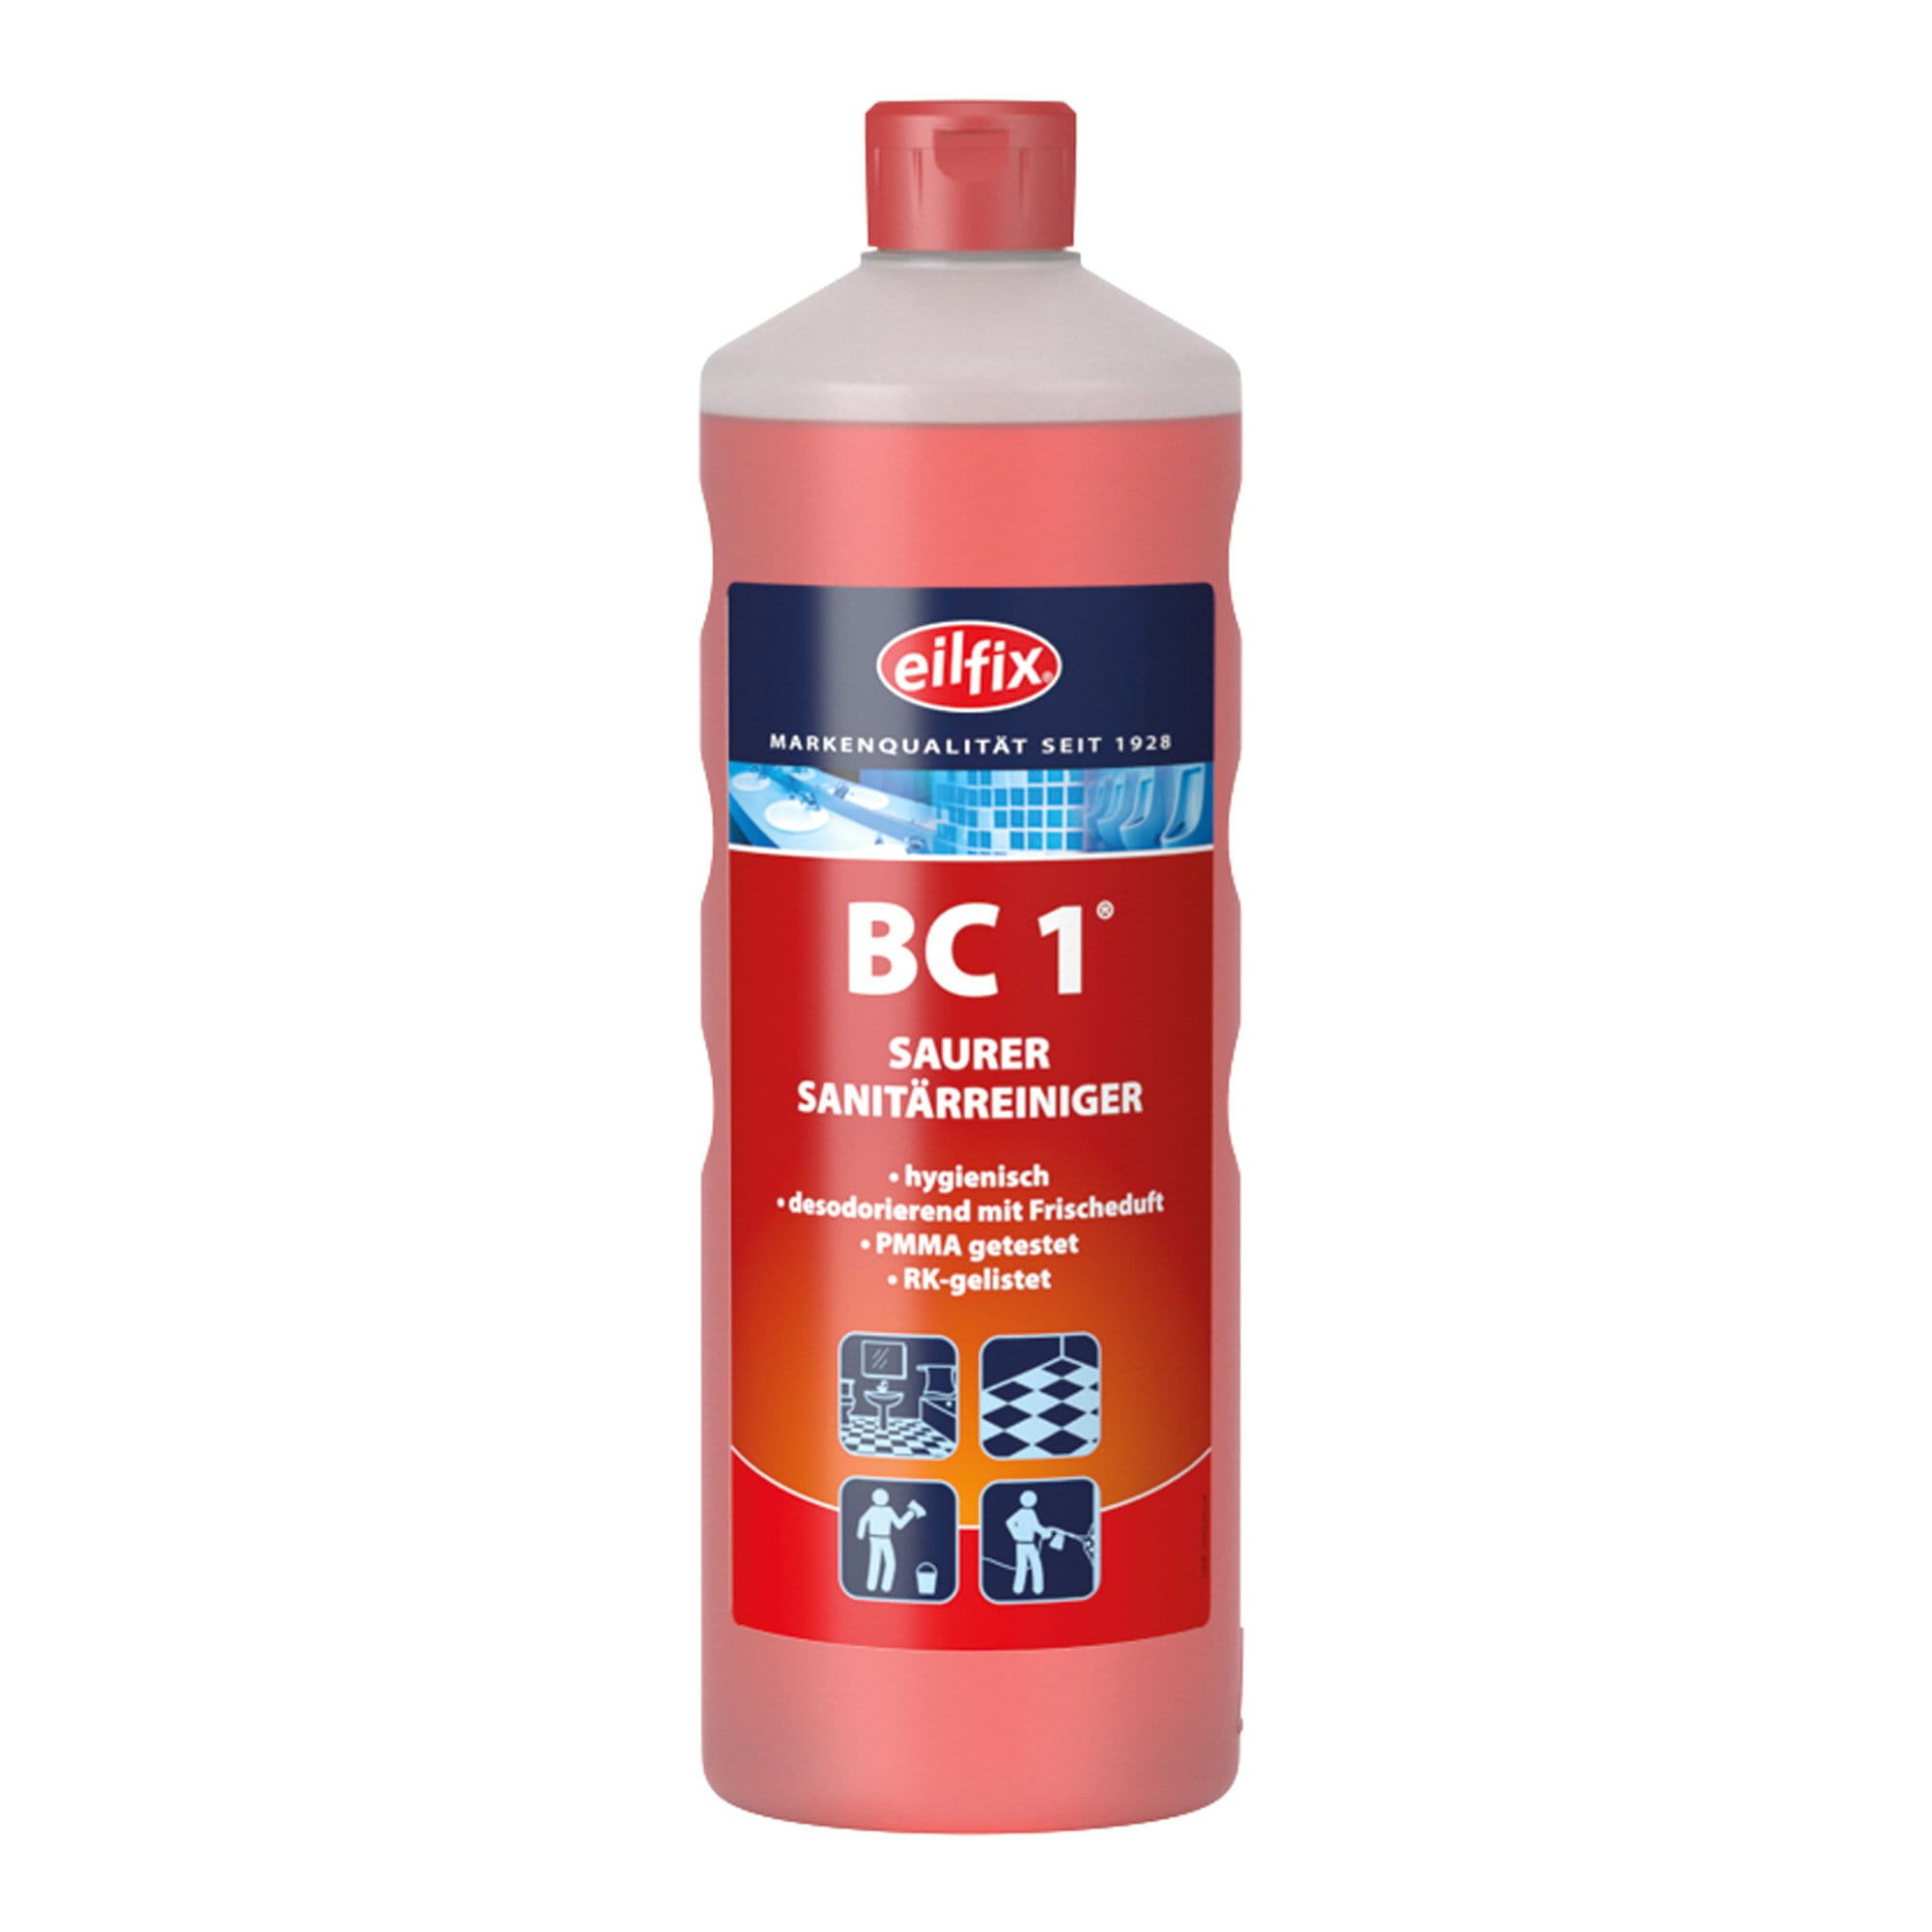 Eilfix BC 1 Sanitärreiniger 1 Liter Flasche 100153-001-000_1